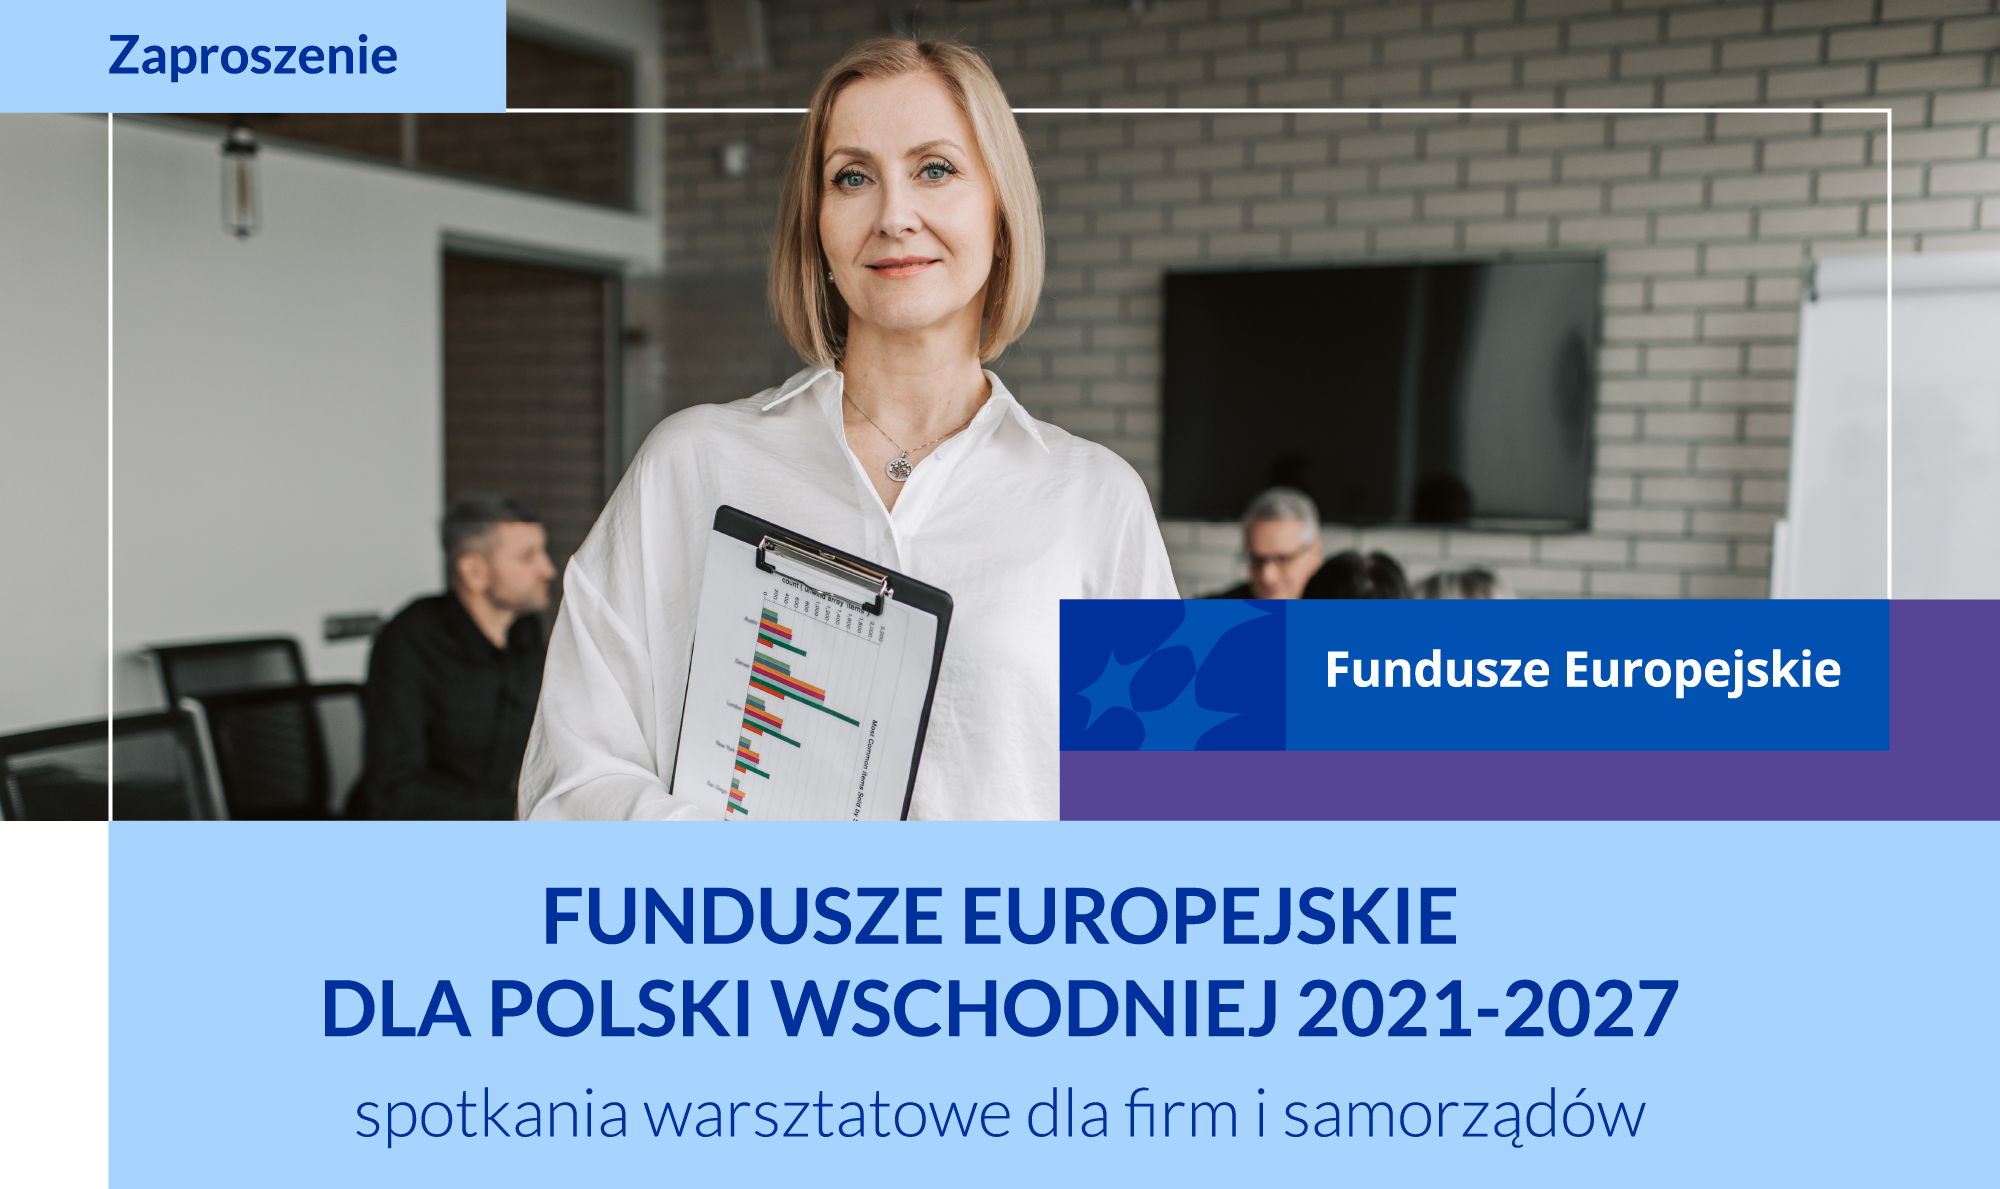 Zaproszenie na spotkania warsztatowe dla firm i samorządów, Fundusze Europejskie dla Polski Wschodniej 2021-2027